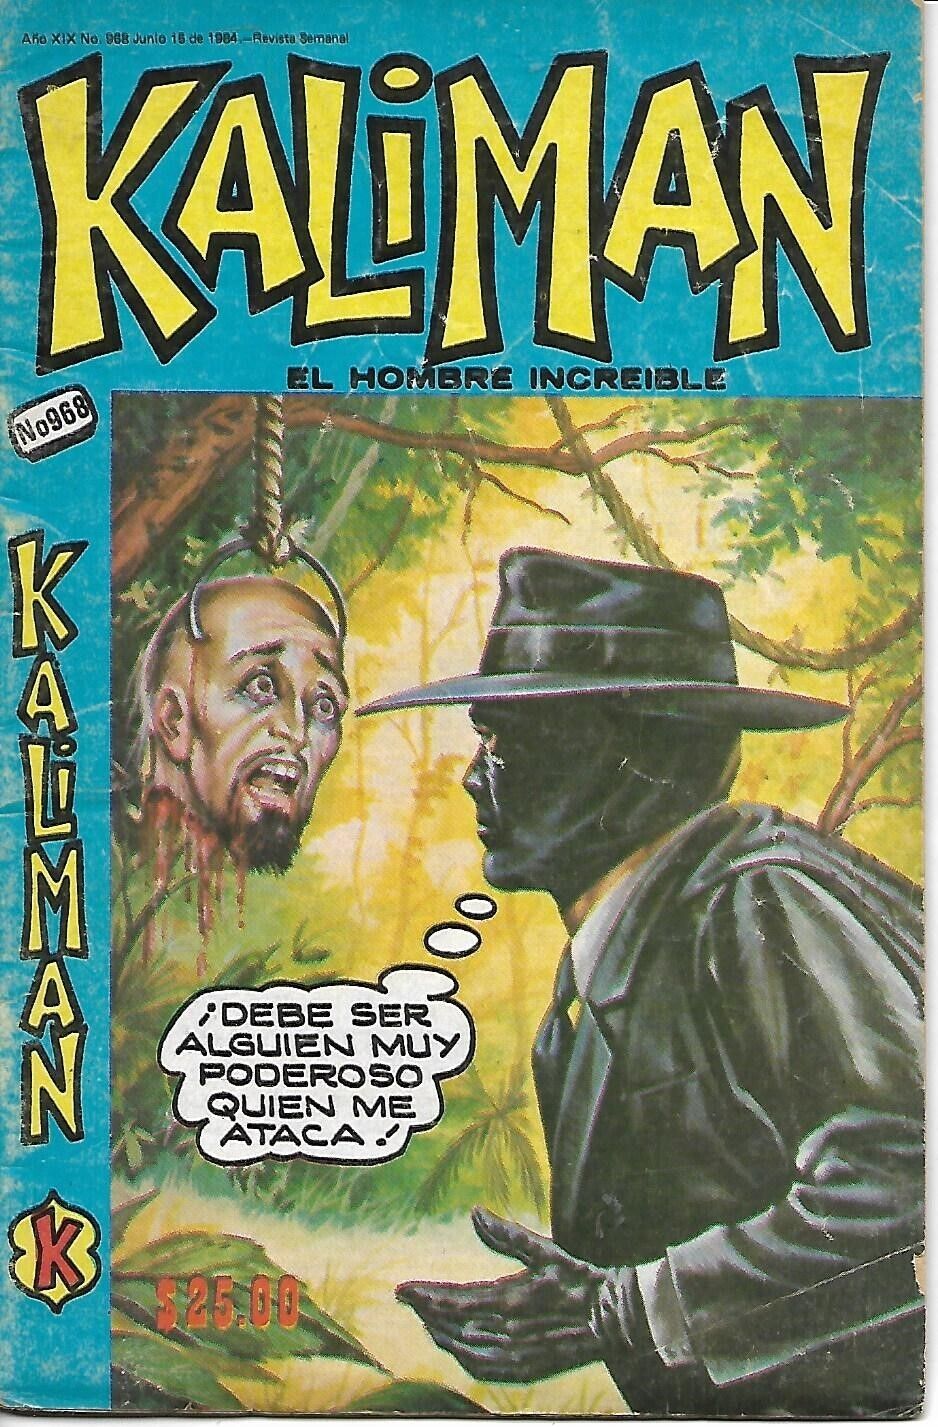 Kaliman El Hombre Increible #968 - Junio 15, 1984 - Mexico